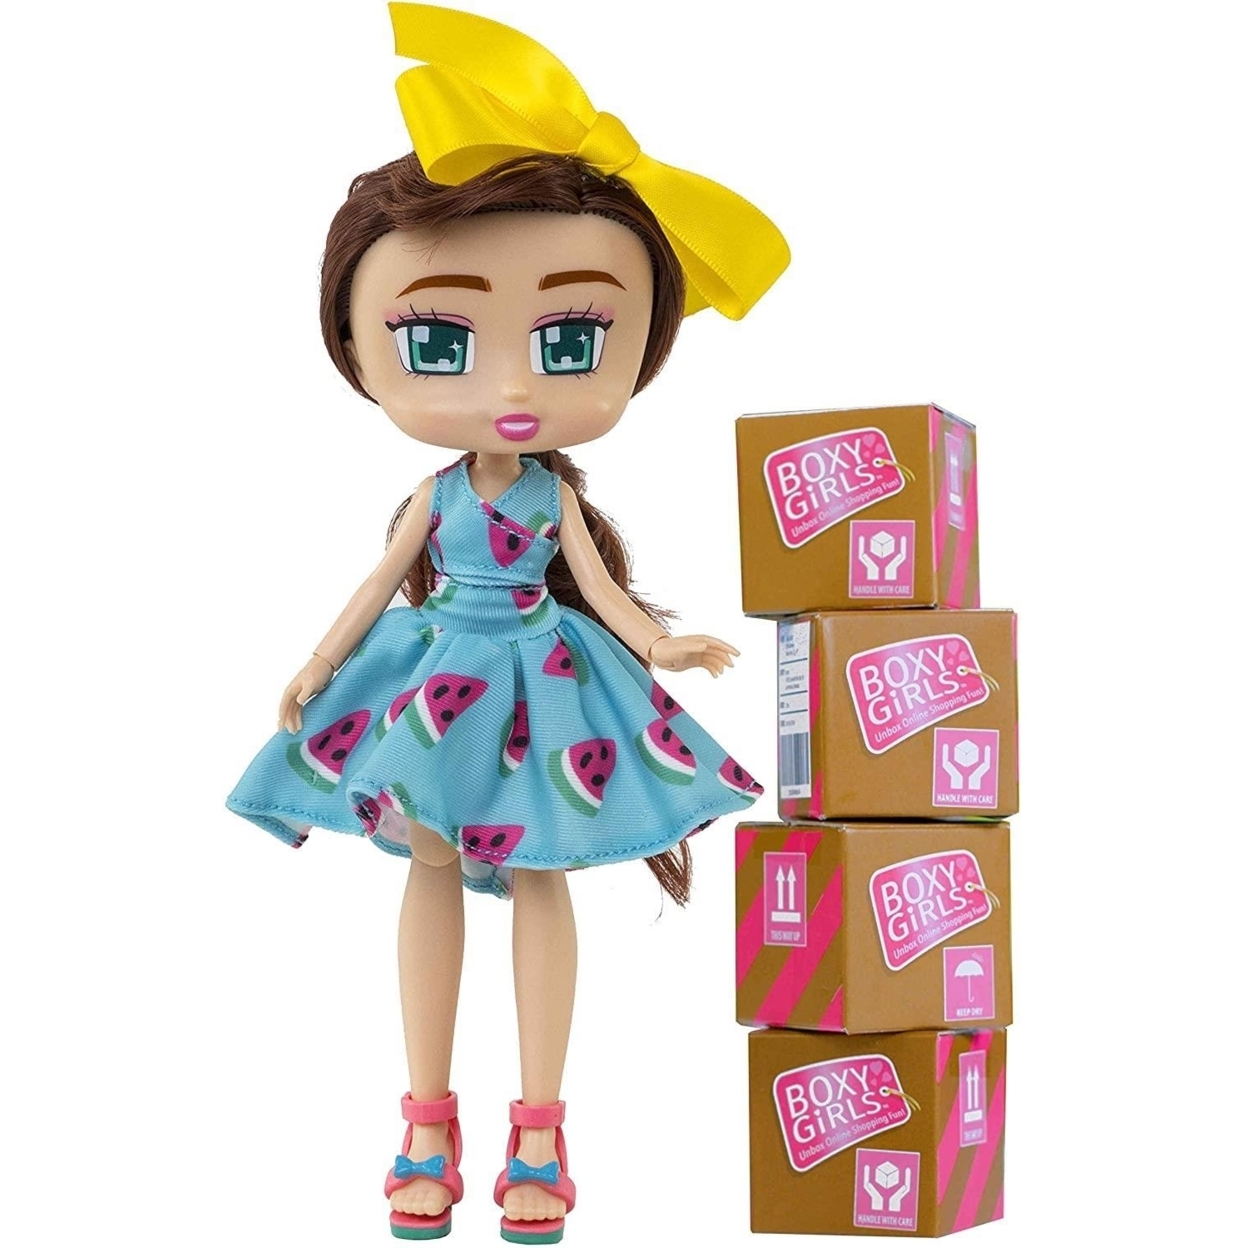 Boxy Girls Boxy Girl Doll Brooklyn - image 2 of 2